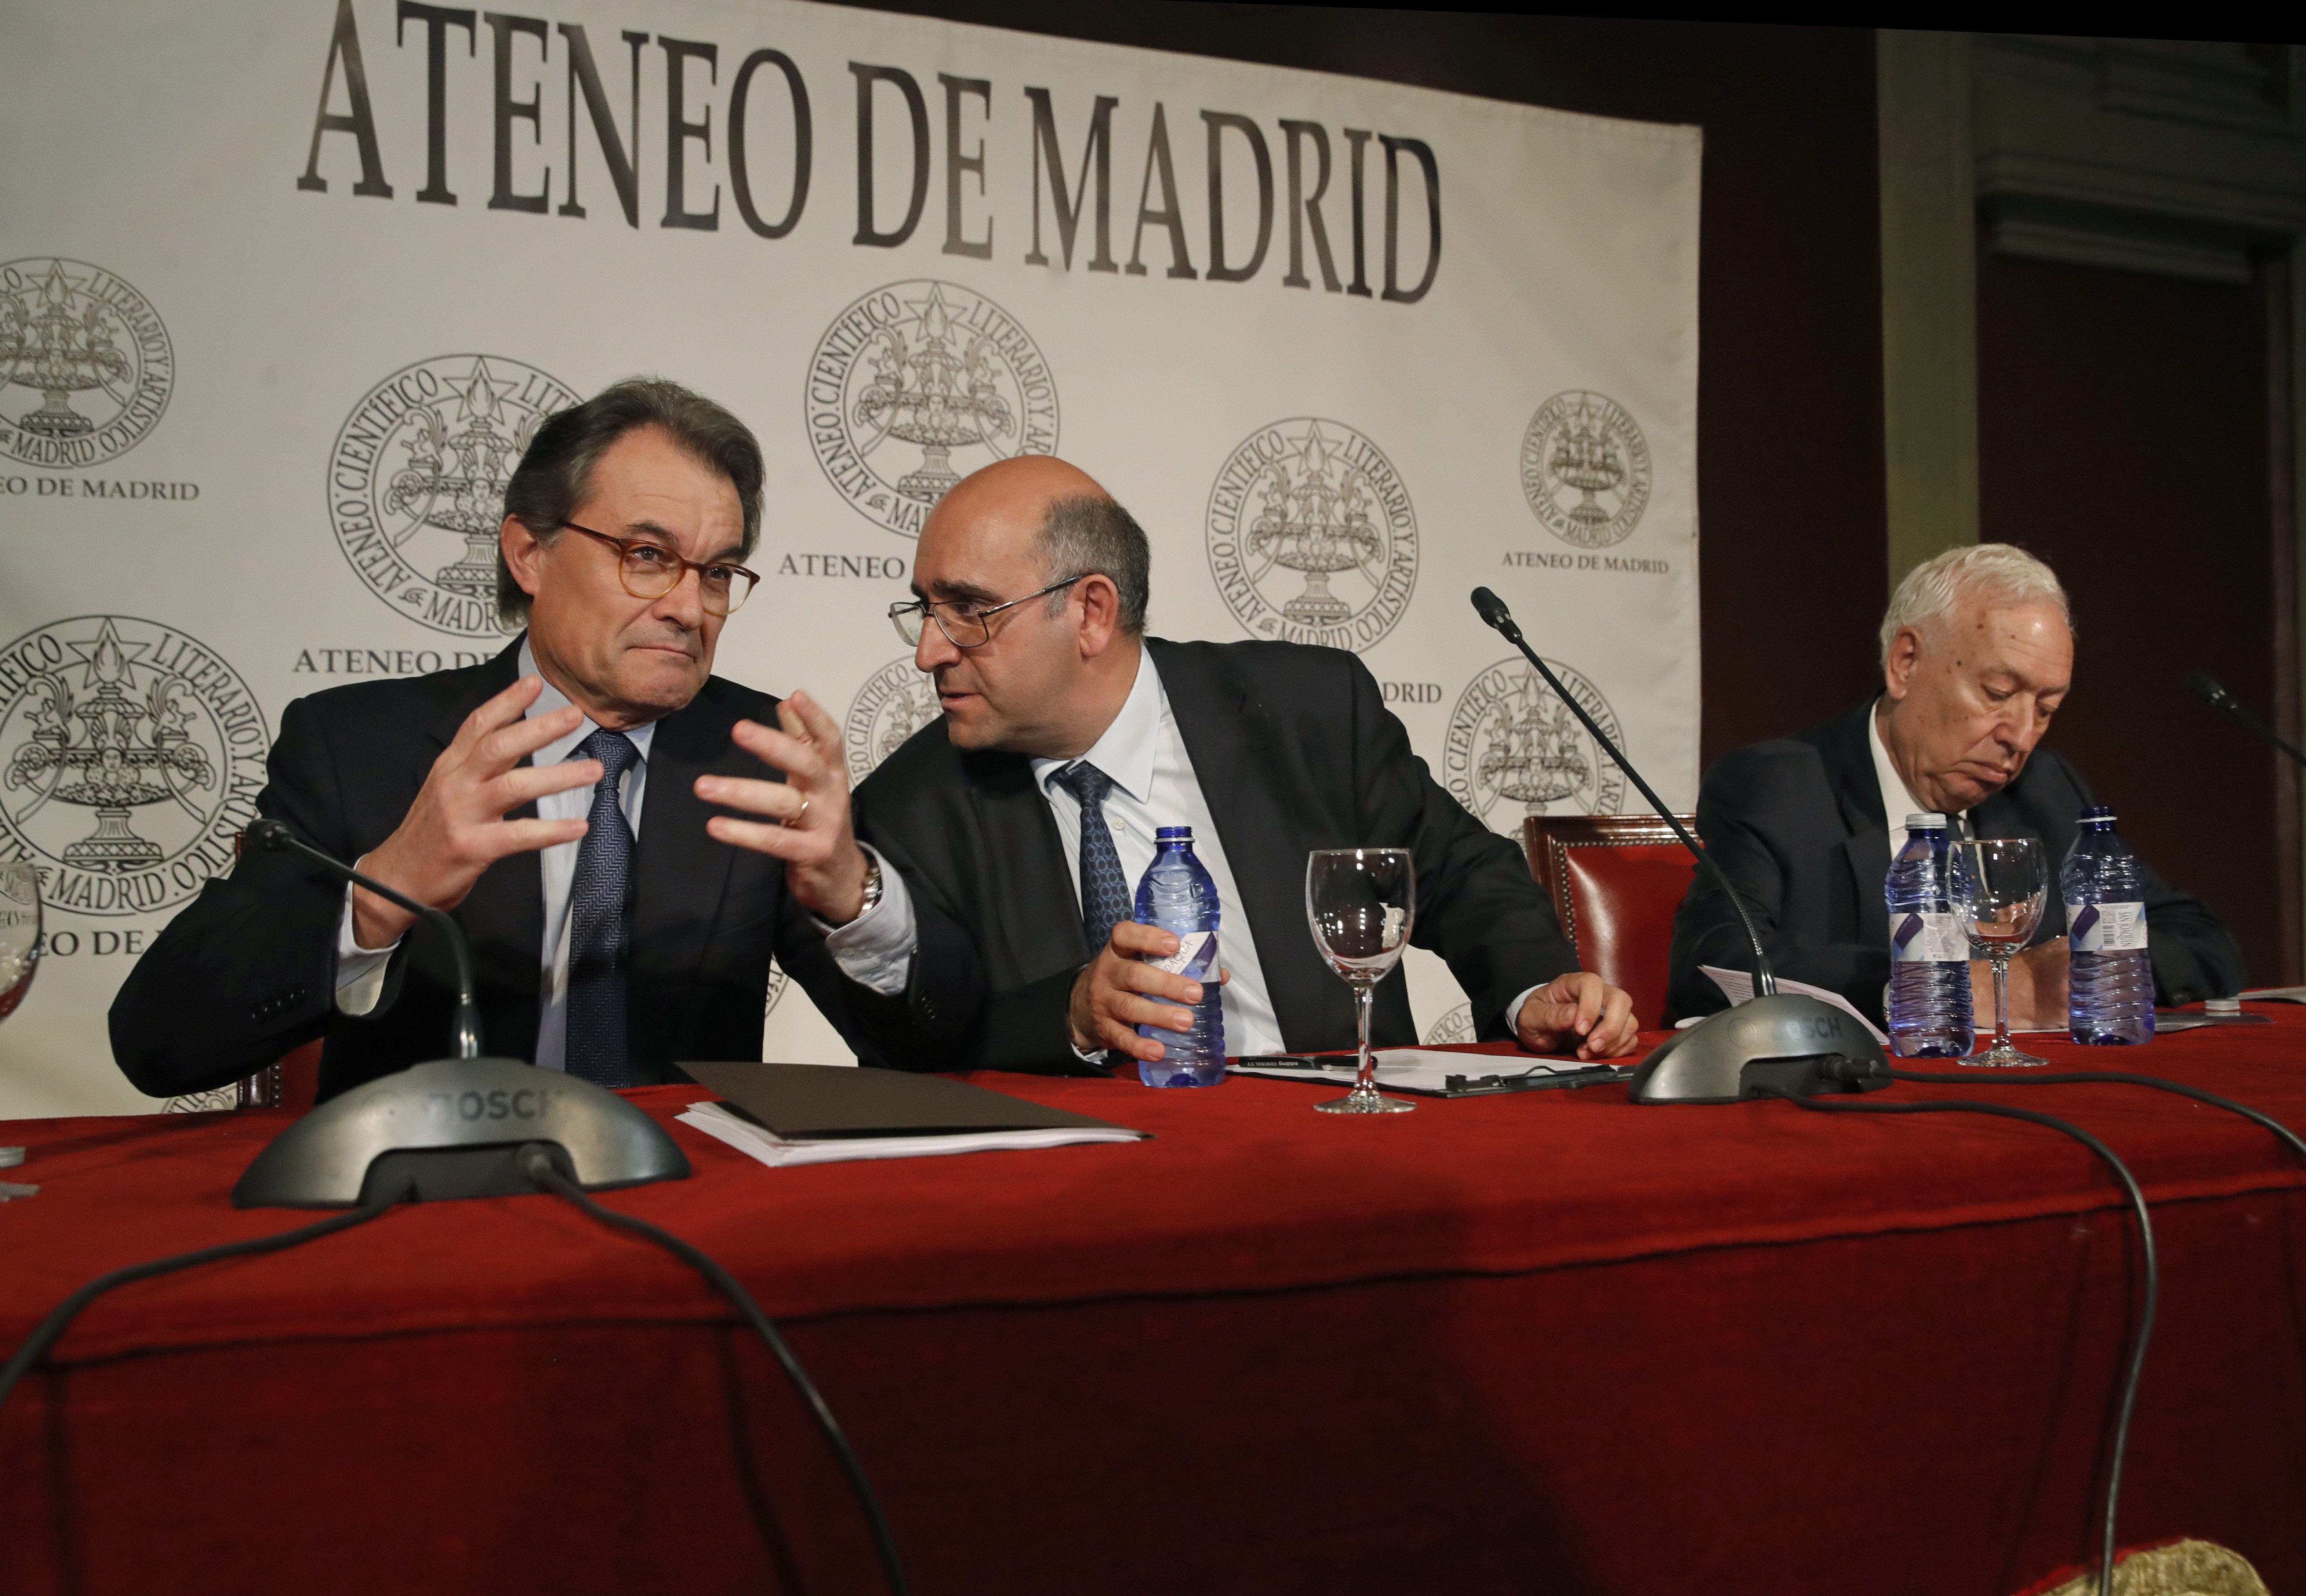 Choque frontal entre Mas y Margallo en un debate en Madrid sobre el procés